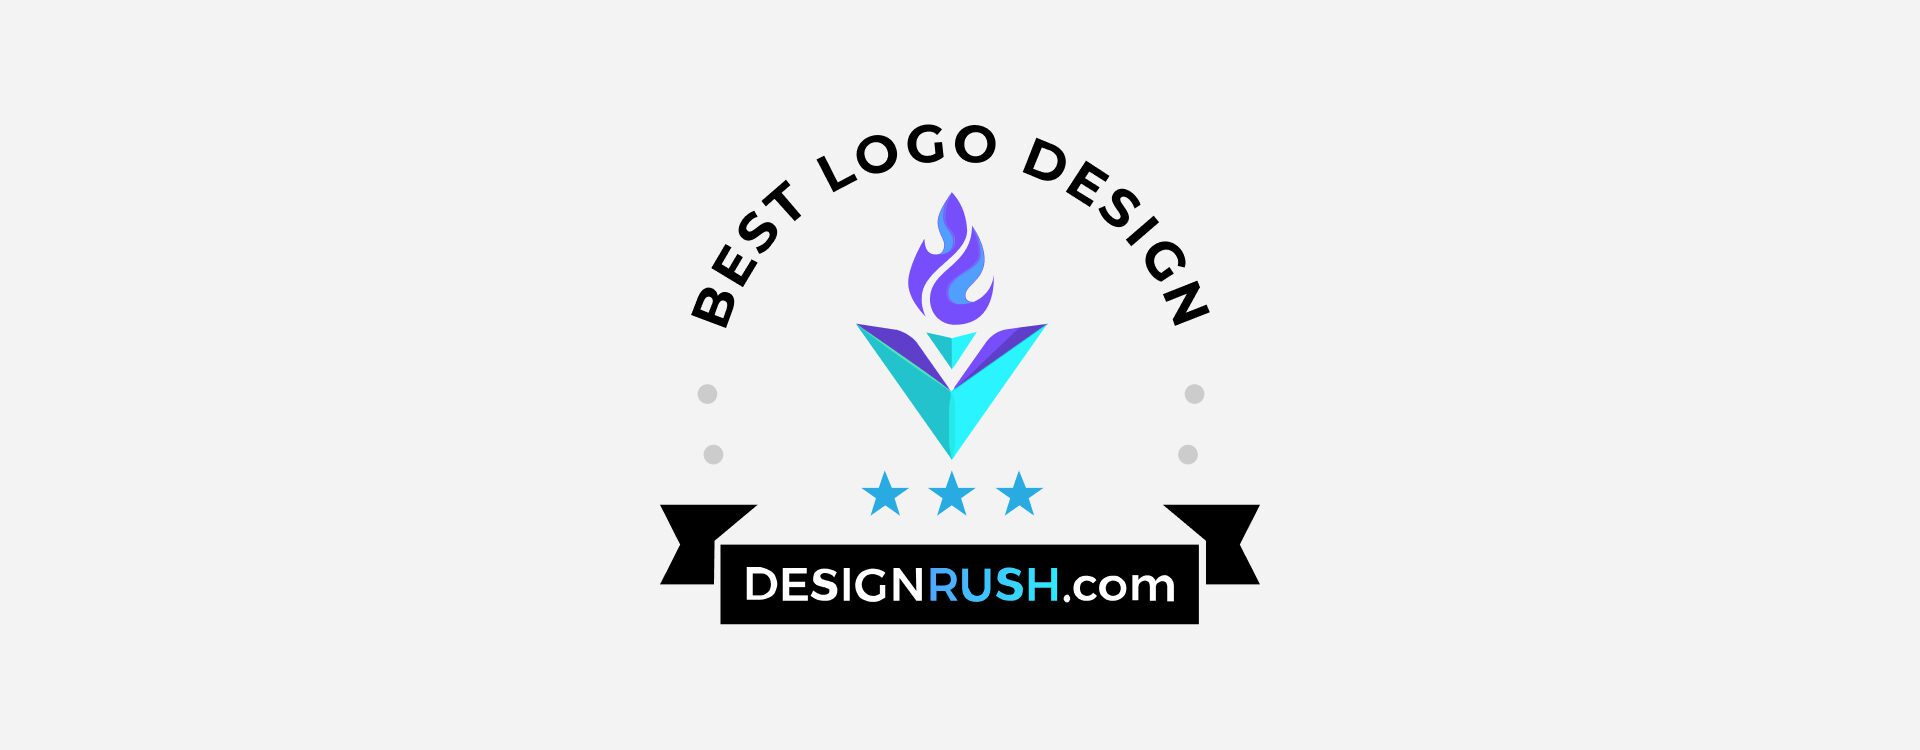 Awarded Best Logo Design at Designrush